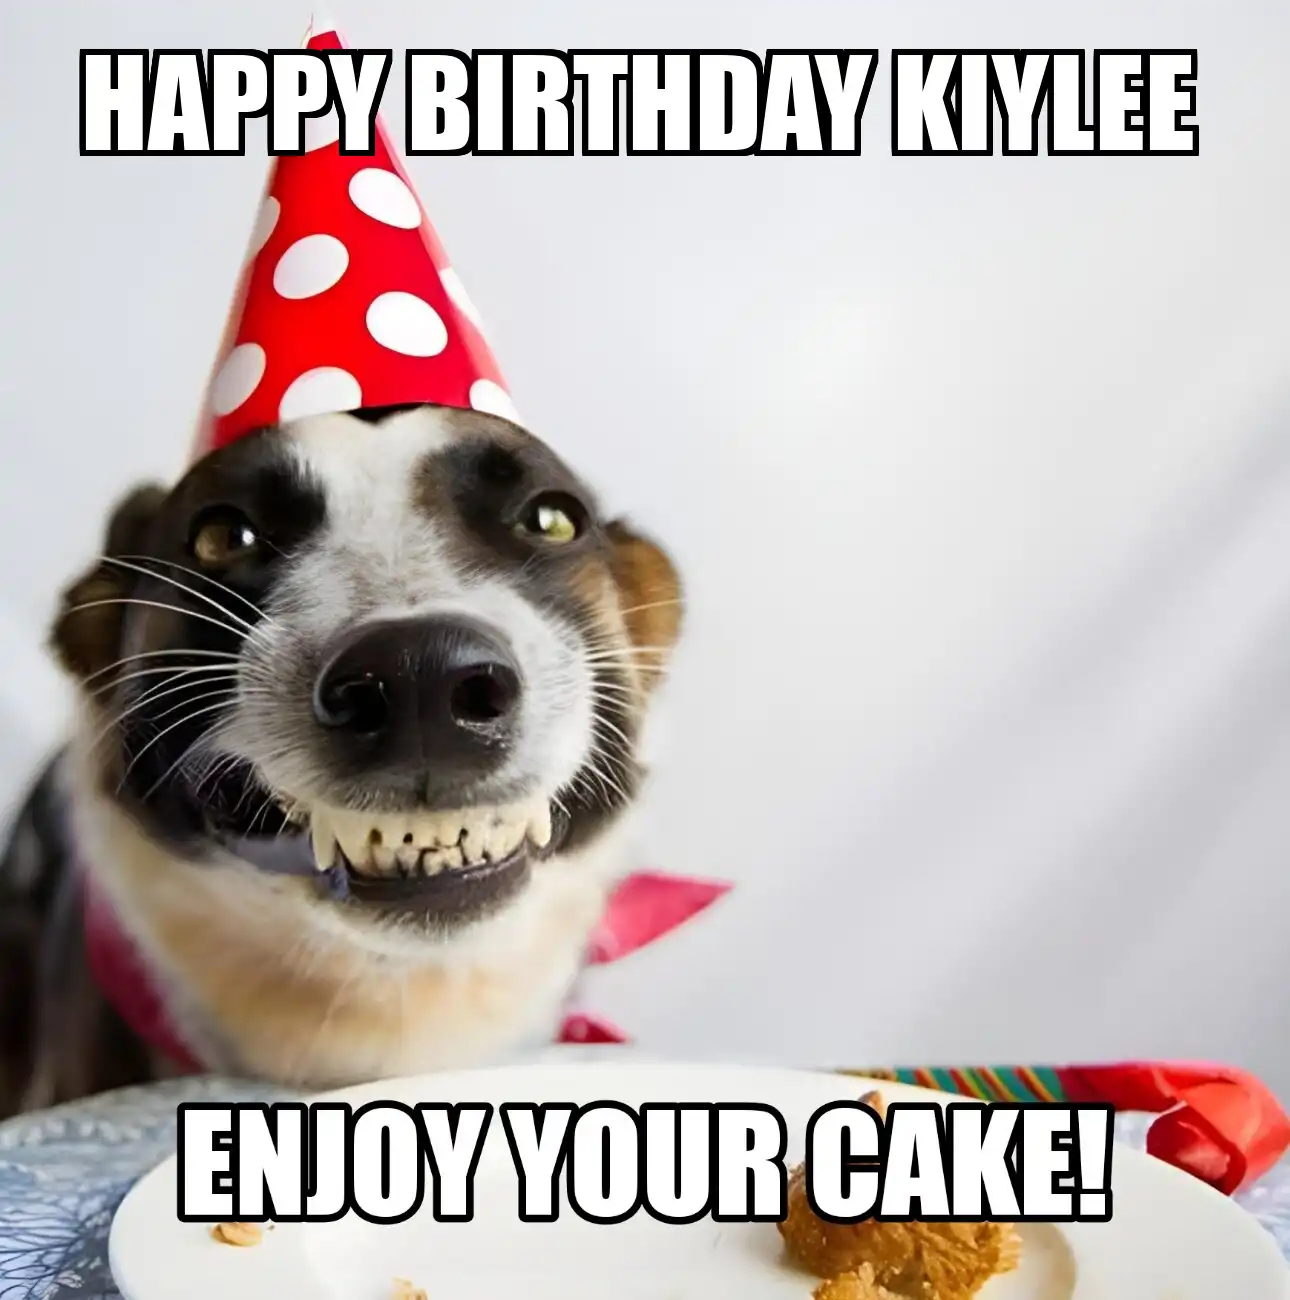 Happy Birthday Kiylee Enjoy Your Cake Dog Meme